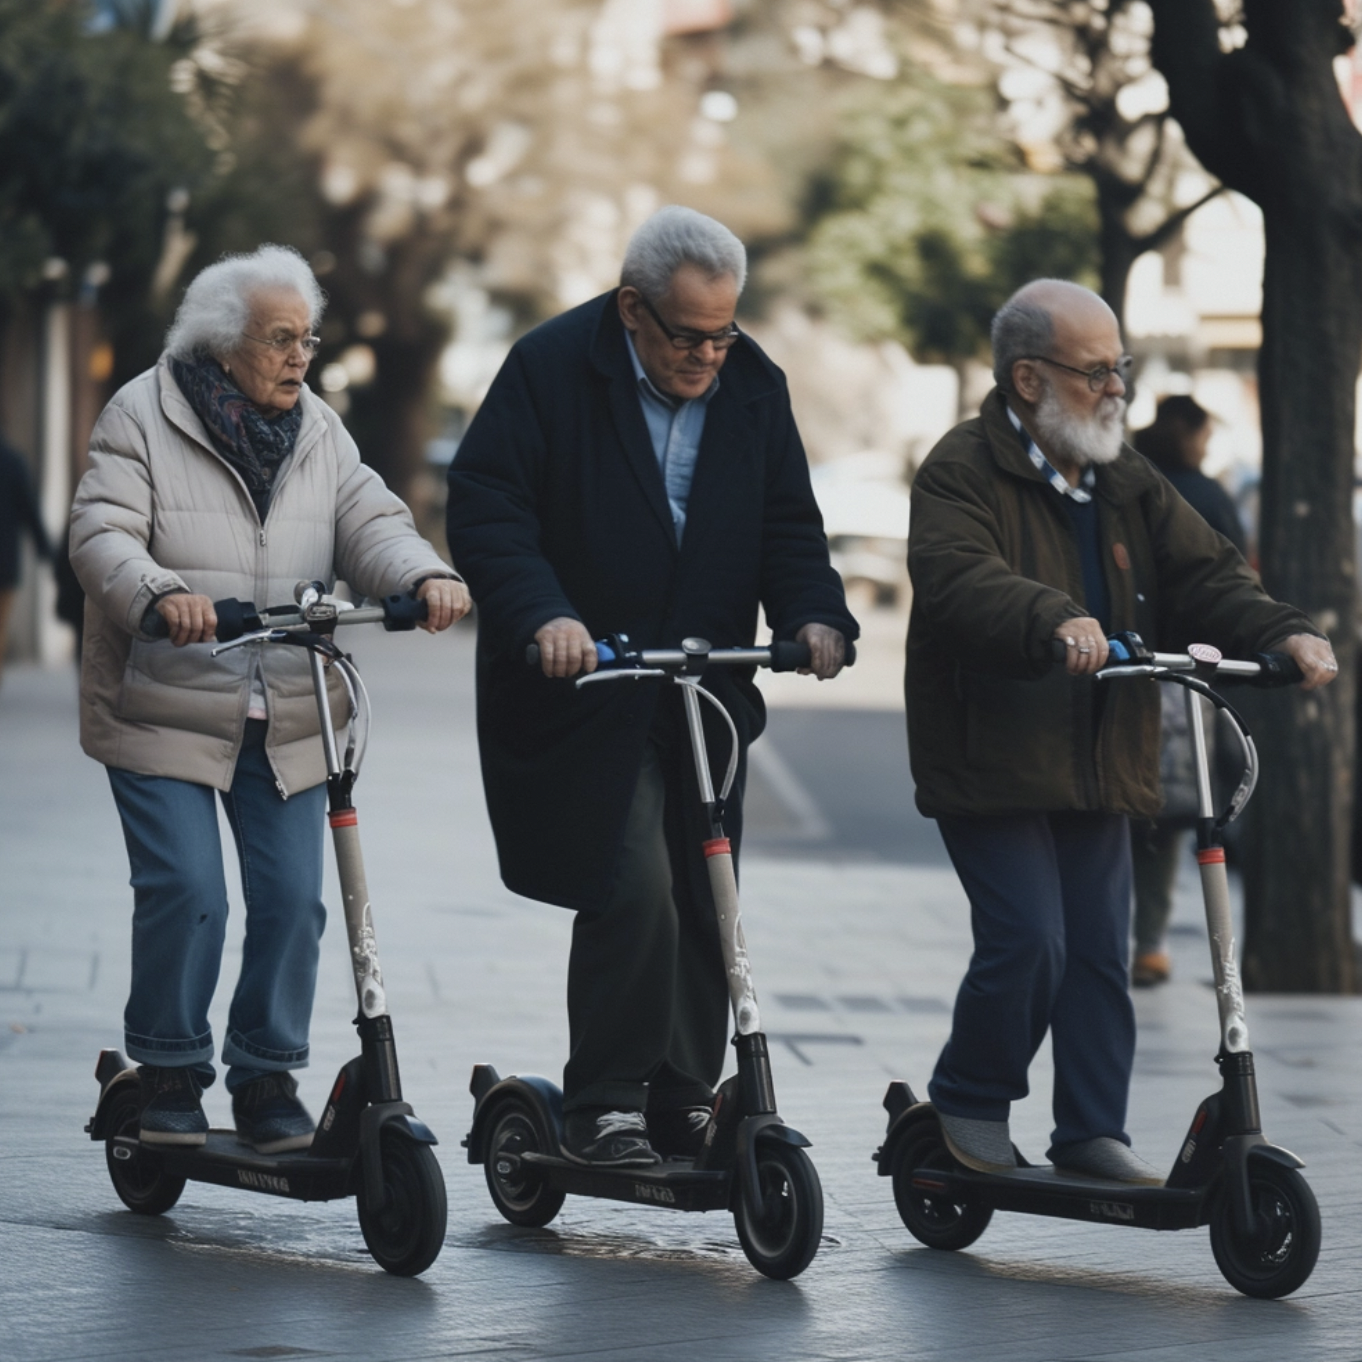 5 Personen, alt, fahren Elektroroller, auf der Straße, draußen, natürliches Licht